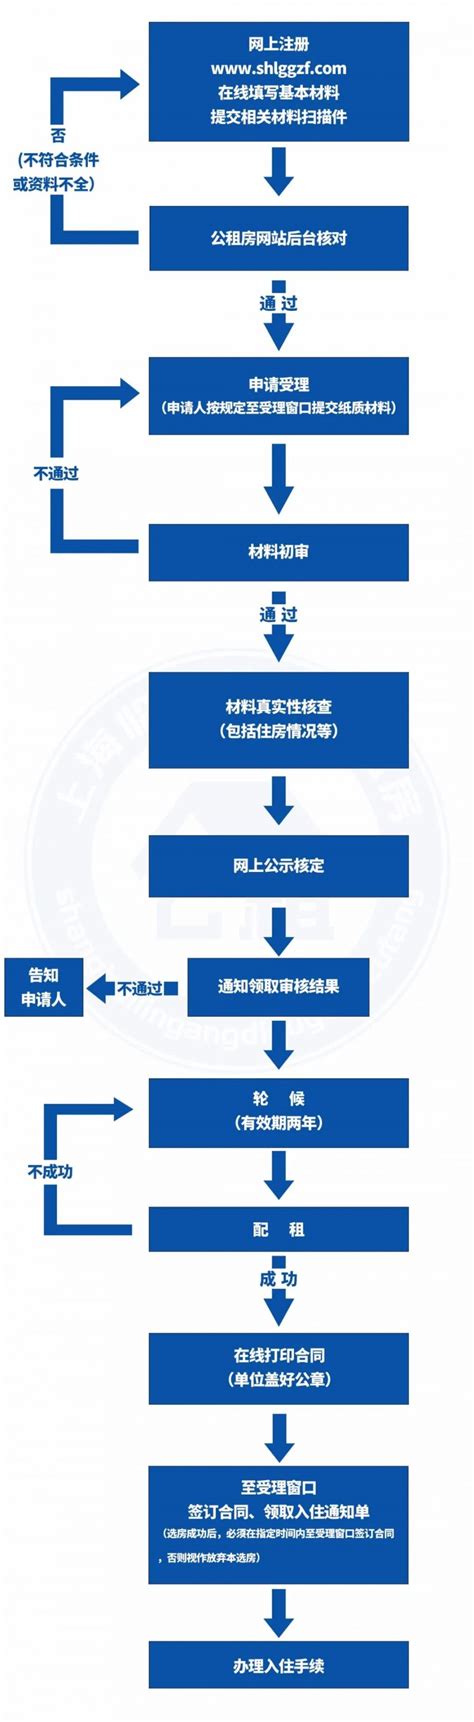 上海公租房线上申请流程(入口+流程) - 上海慢慢看